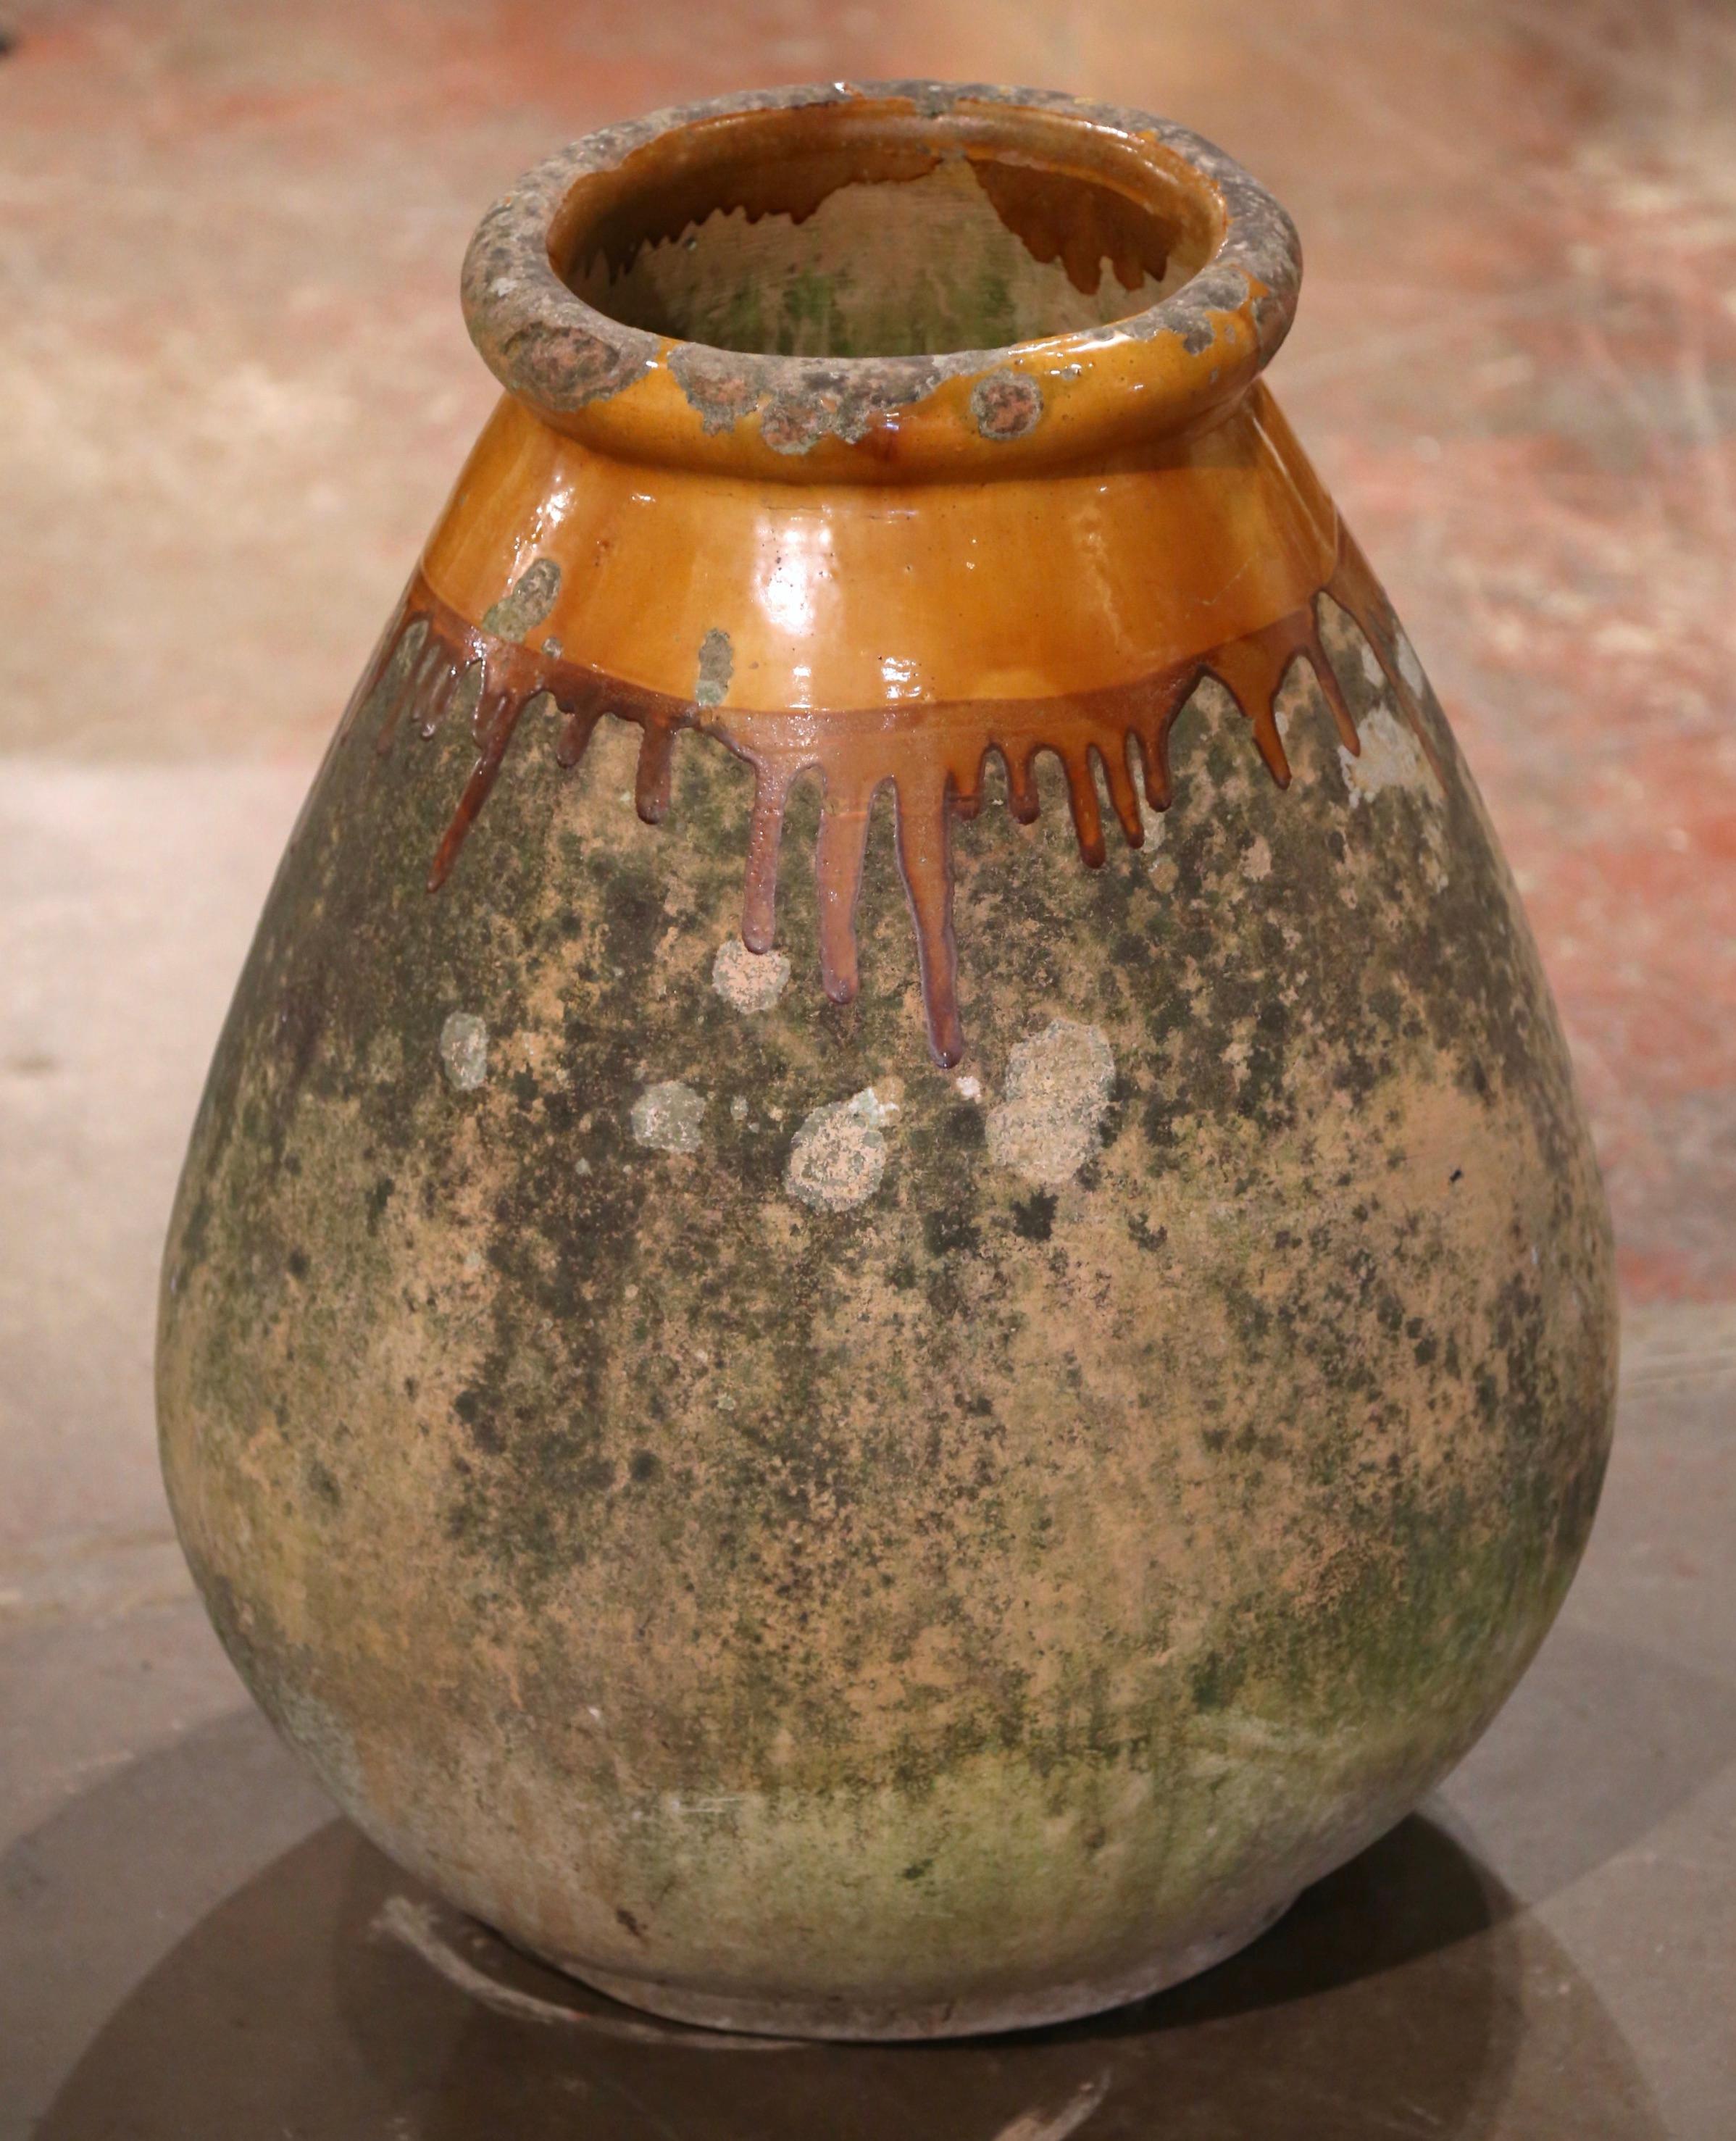 Cette grande jarre à olives ancienne en faïence a été créée à Biot, dans le sud de la France, vers 1760. Fabriqué en argile blonde et de couleur neutre, le vase en terre cuite a une forme ronde et bulbeuse traditionnelle. Ce pot rustique et usé par